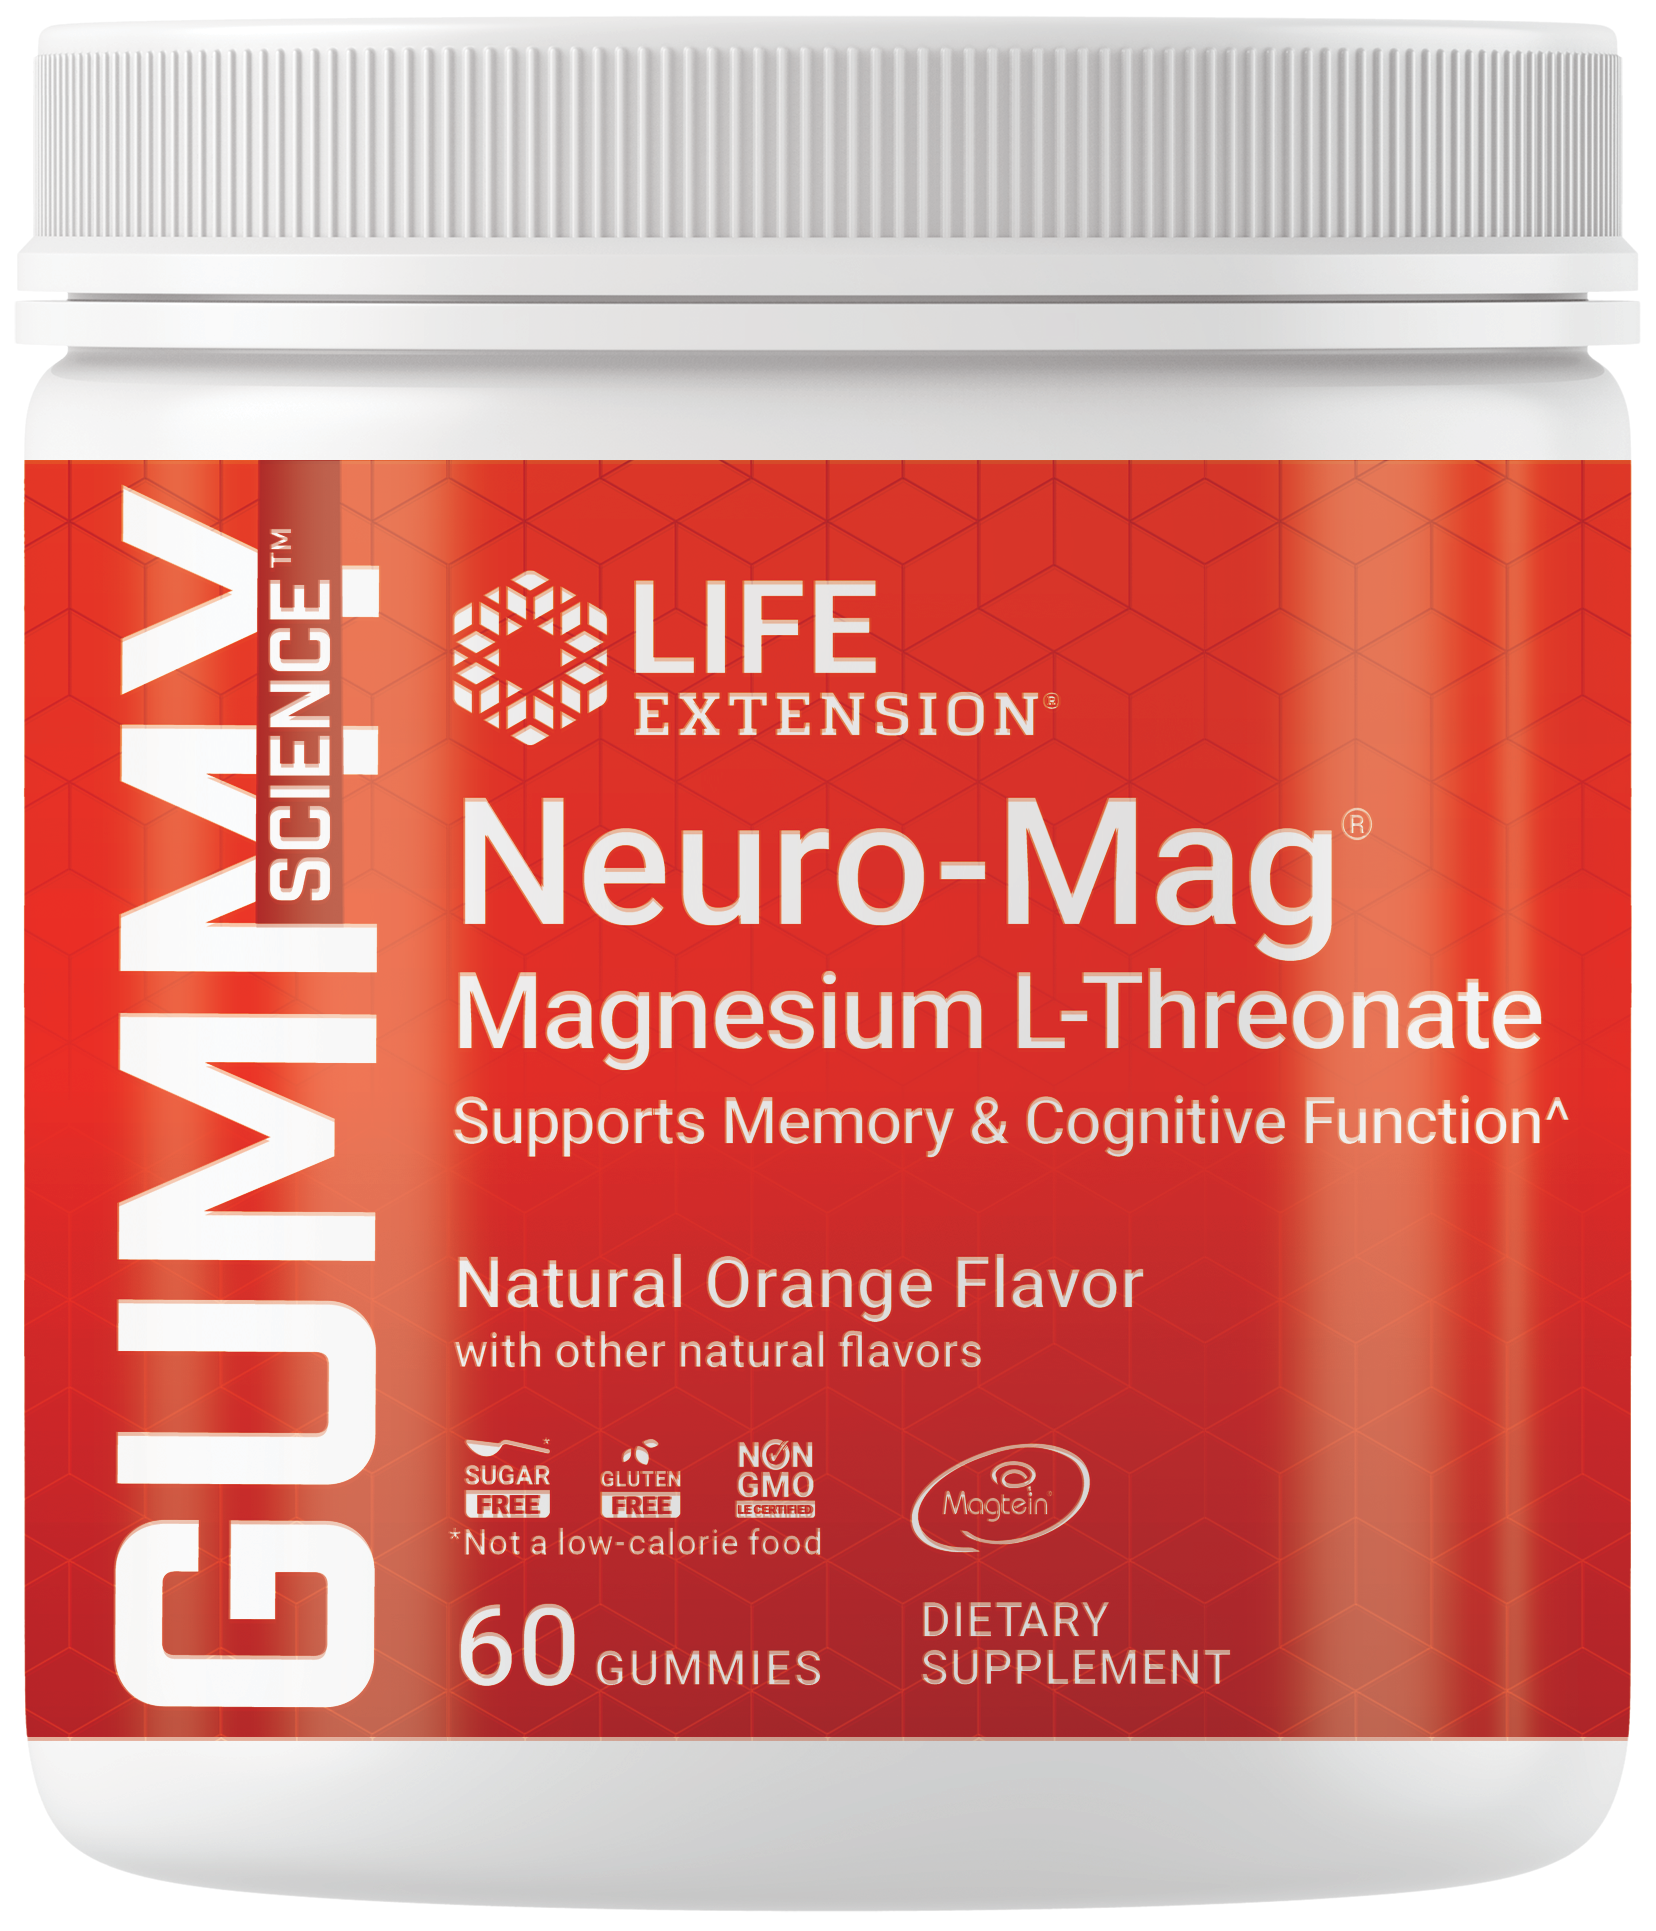 Gummy Science™ Neuro-Mag® Magnesium L-Threonate, zuckerfreien Gummibärchen mit ultra-absorbierbarem Magnesium.